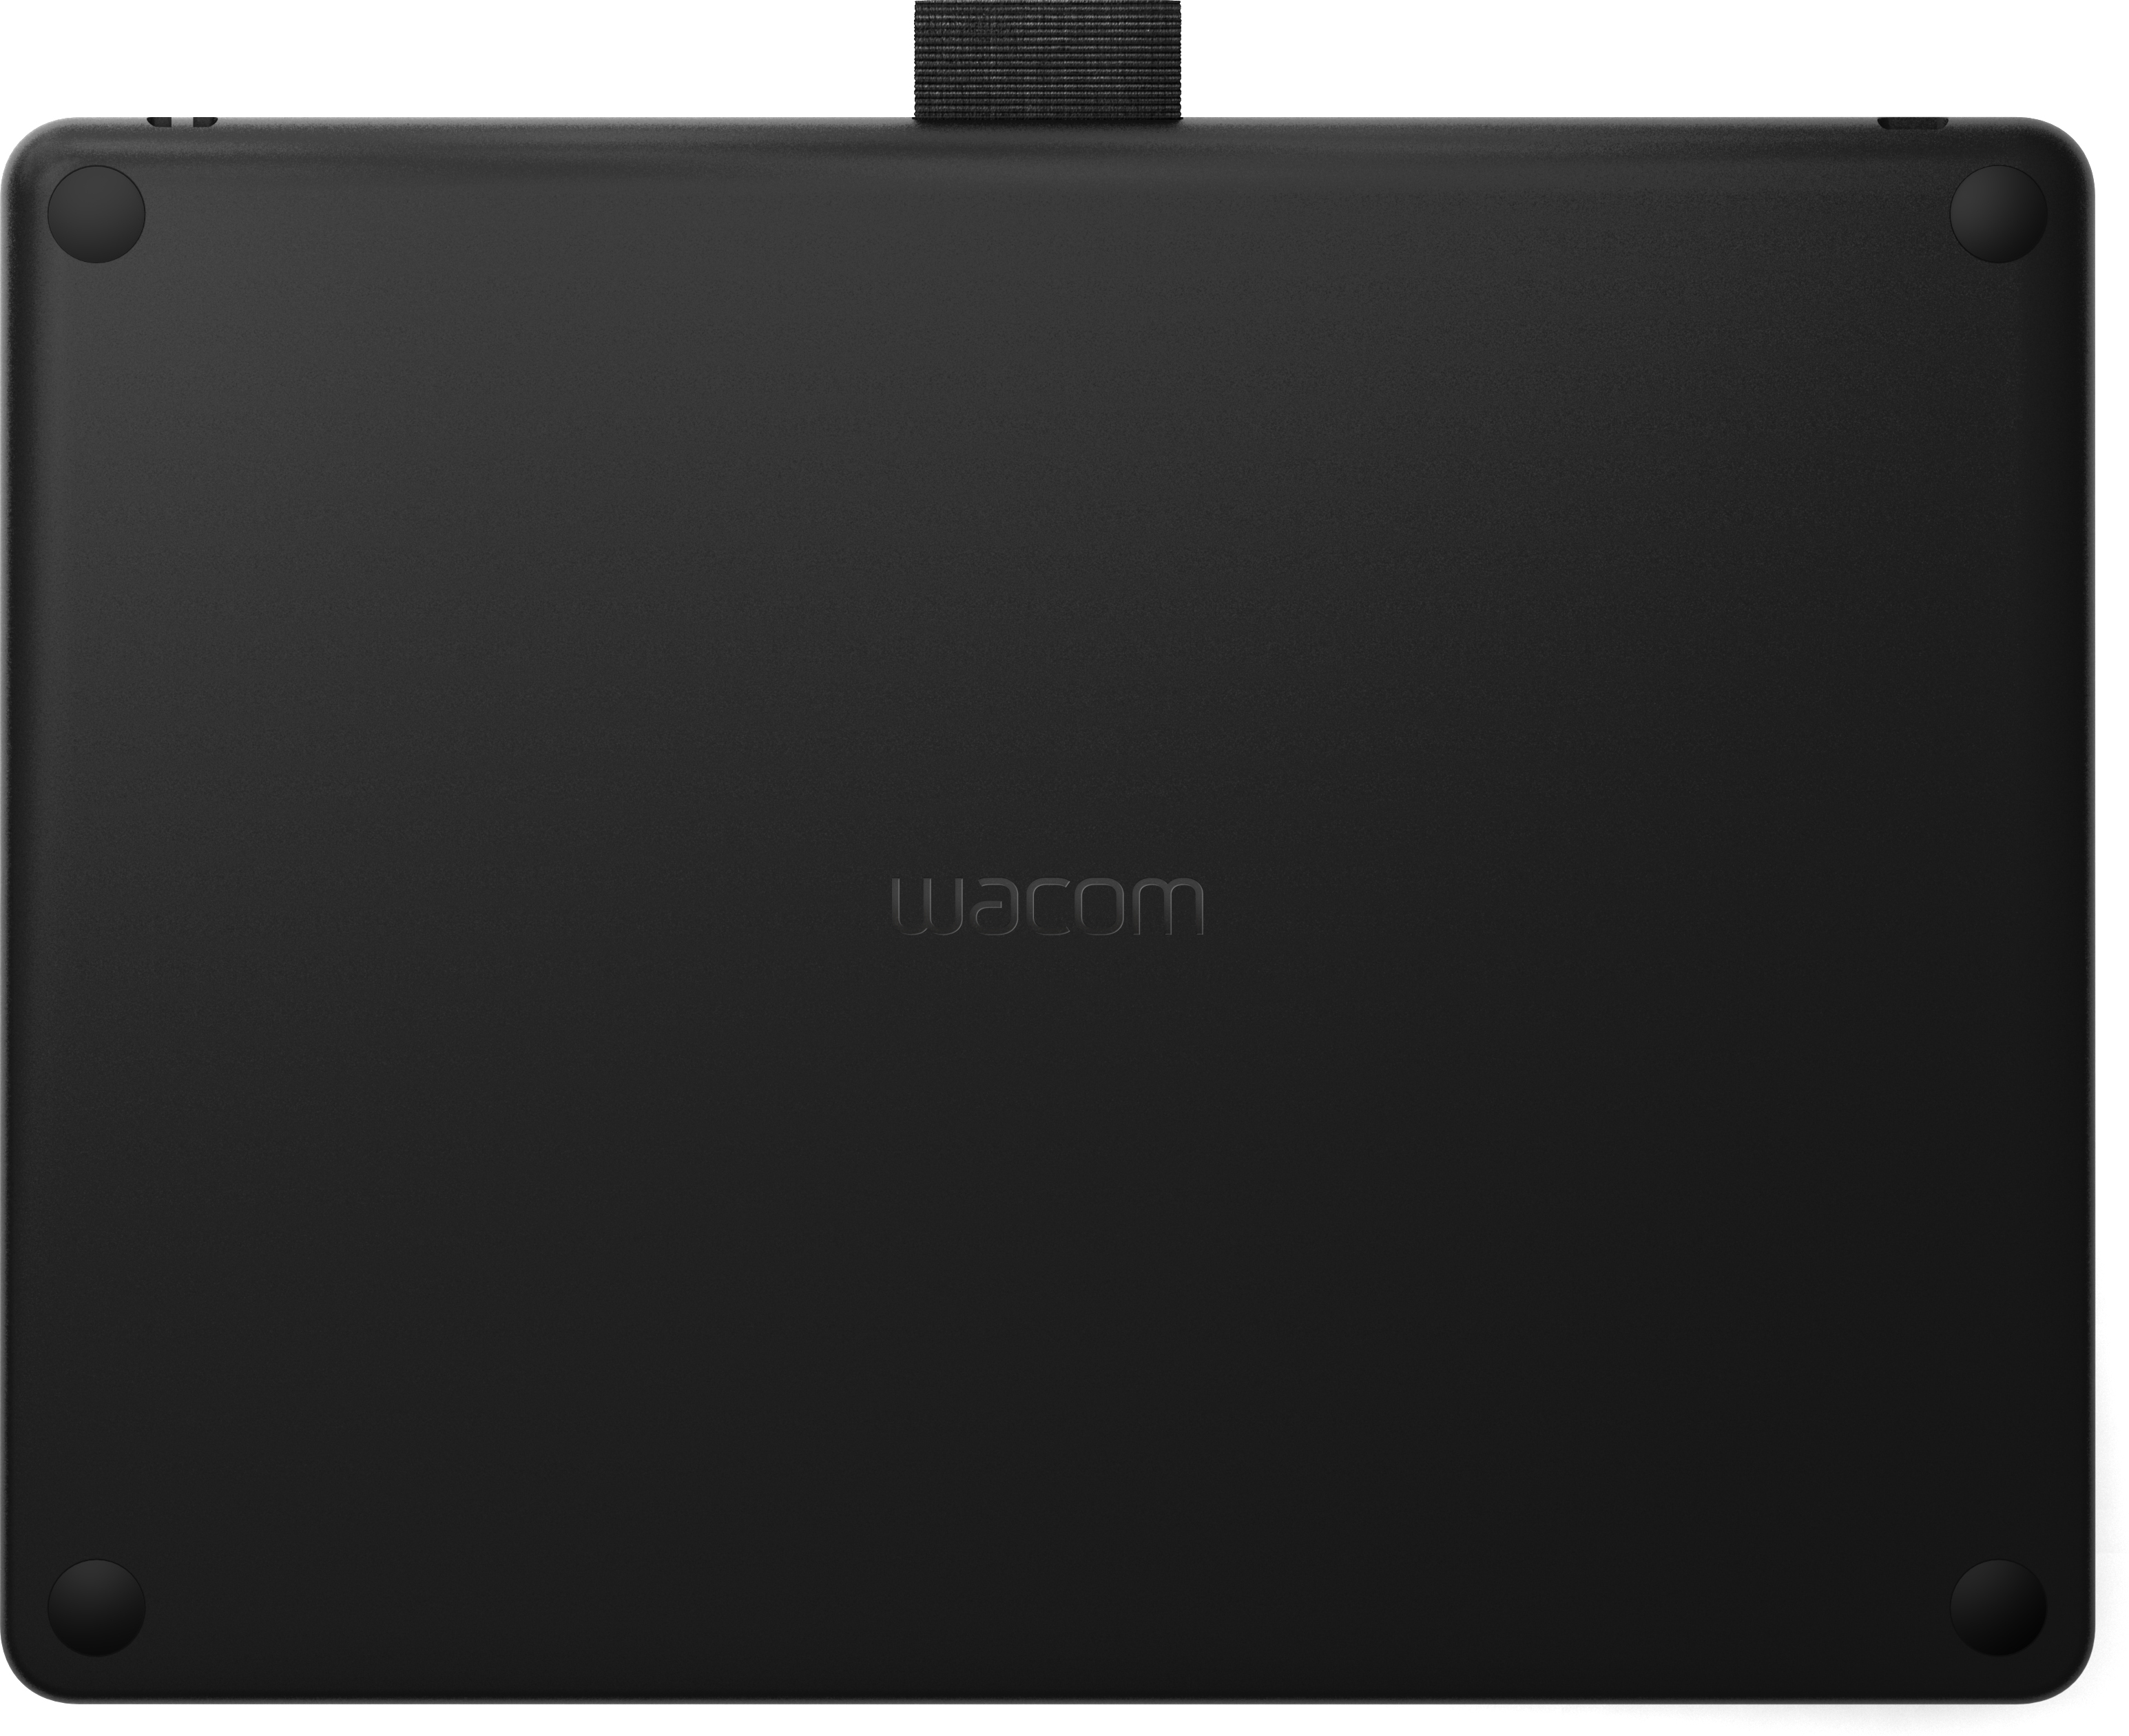 Tableta Wacom Intuos bluetooth 216 x 135 mm 2540 lpi para pintar dibujar y editar photos con 3 softwares creativos incluidos descargar windows mac oficina en casa